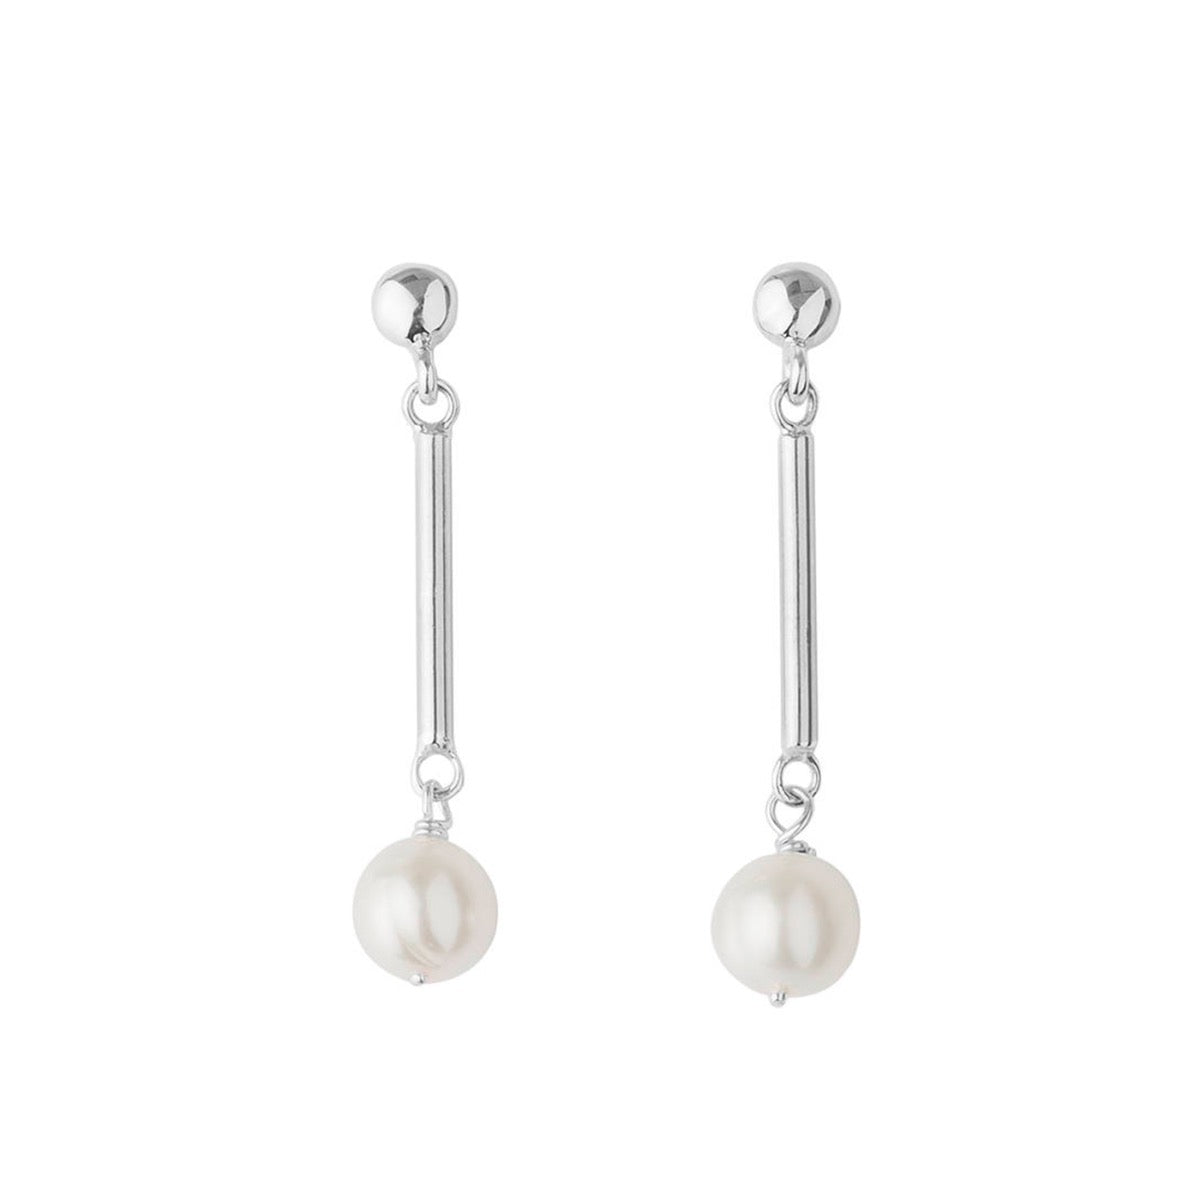 Silver & Pearl Drop Earrings | Hersey & Son Silversmiths